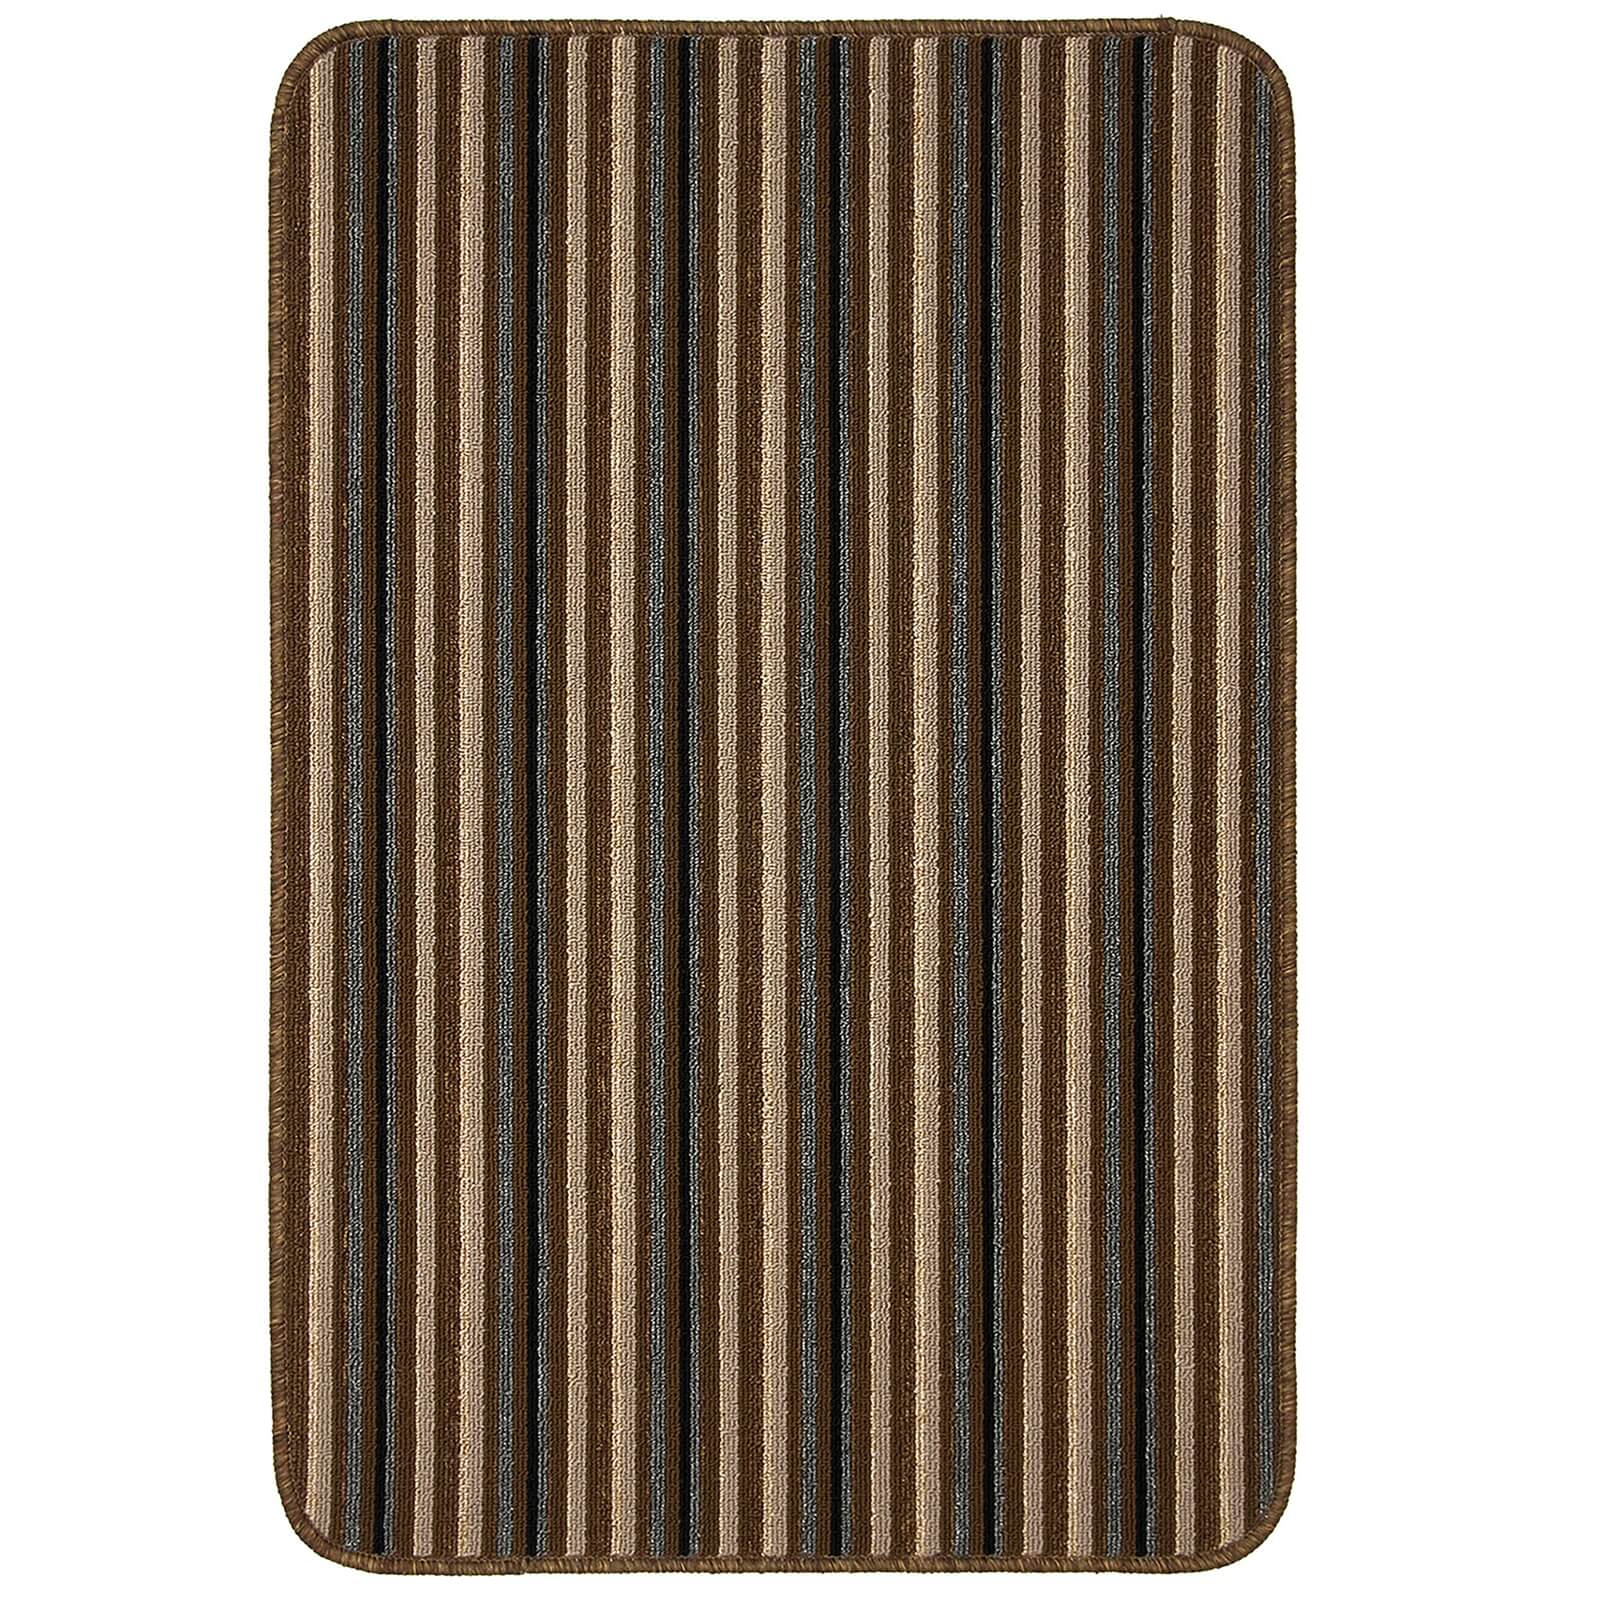 Java washable stripe mat -Chocolate